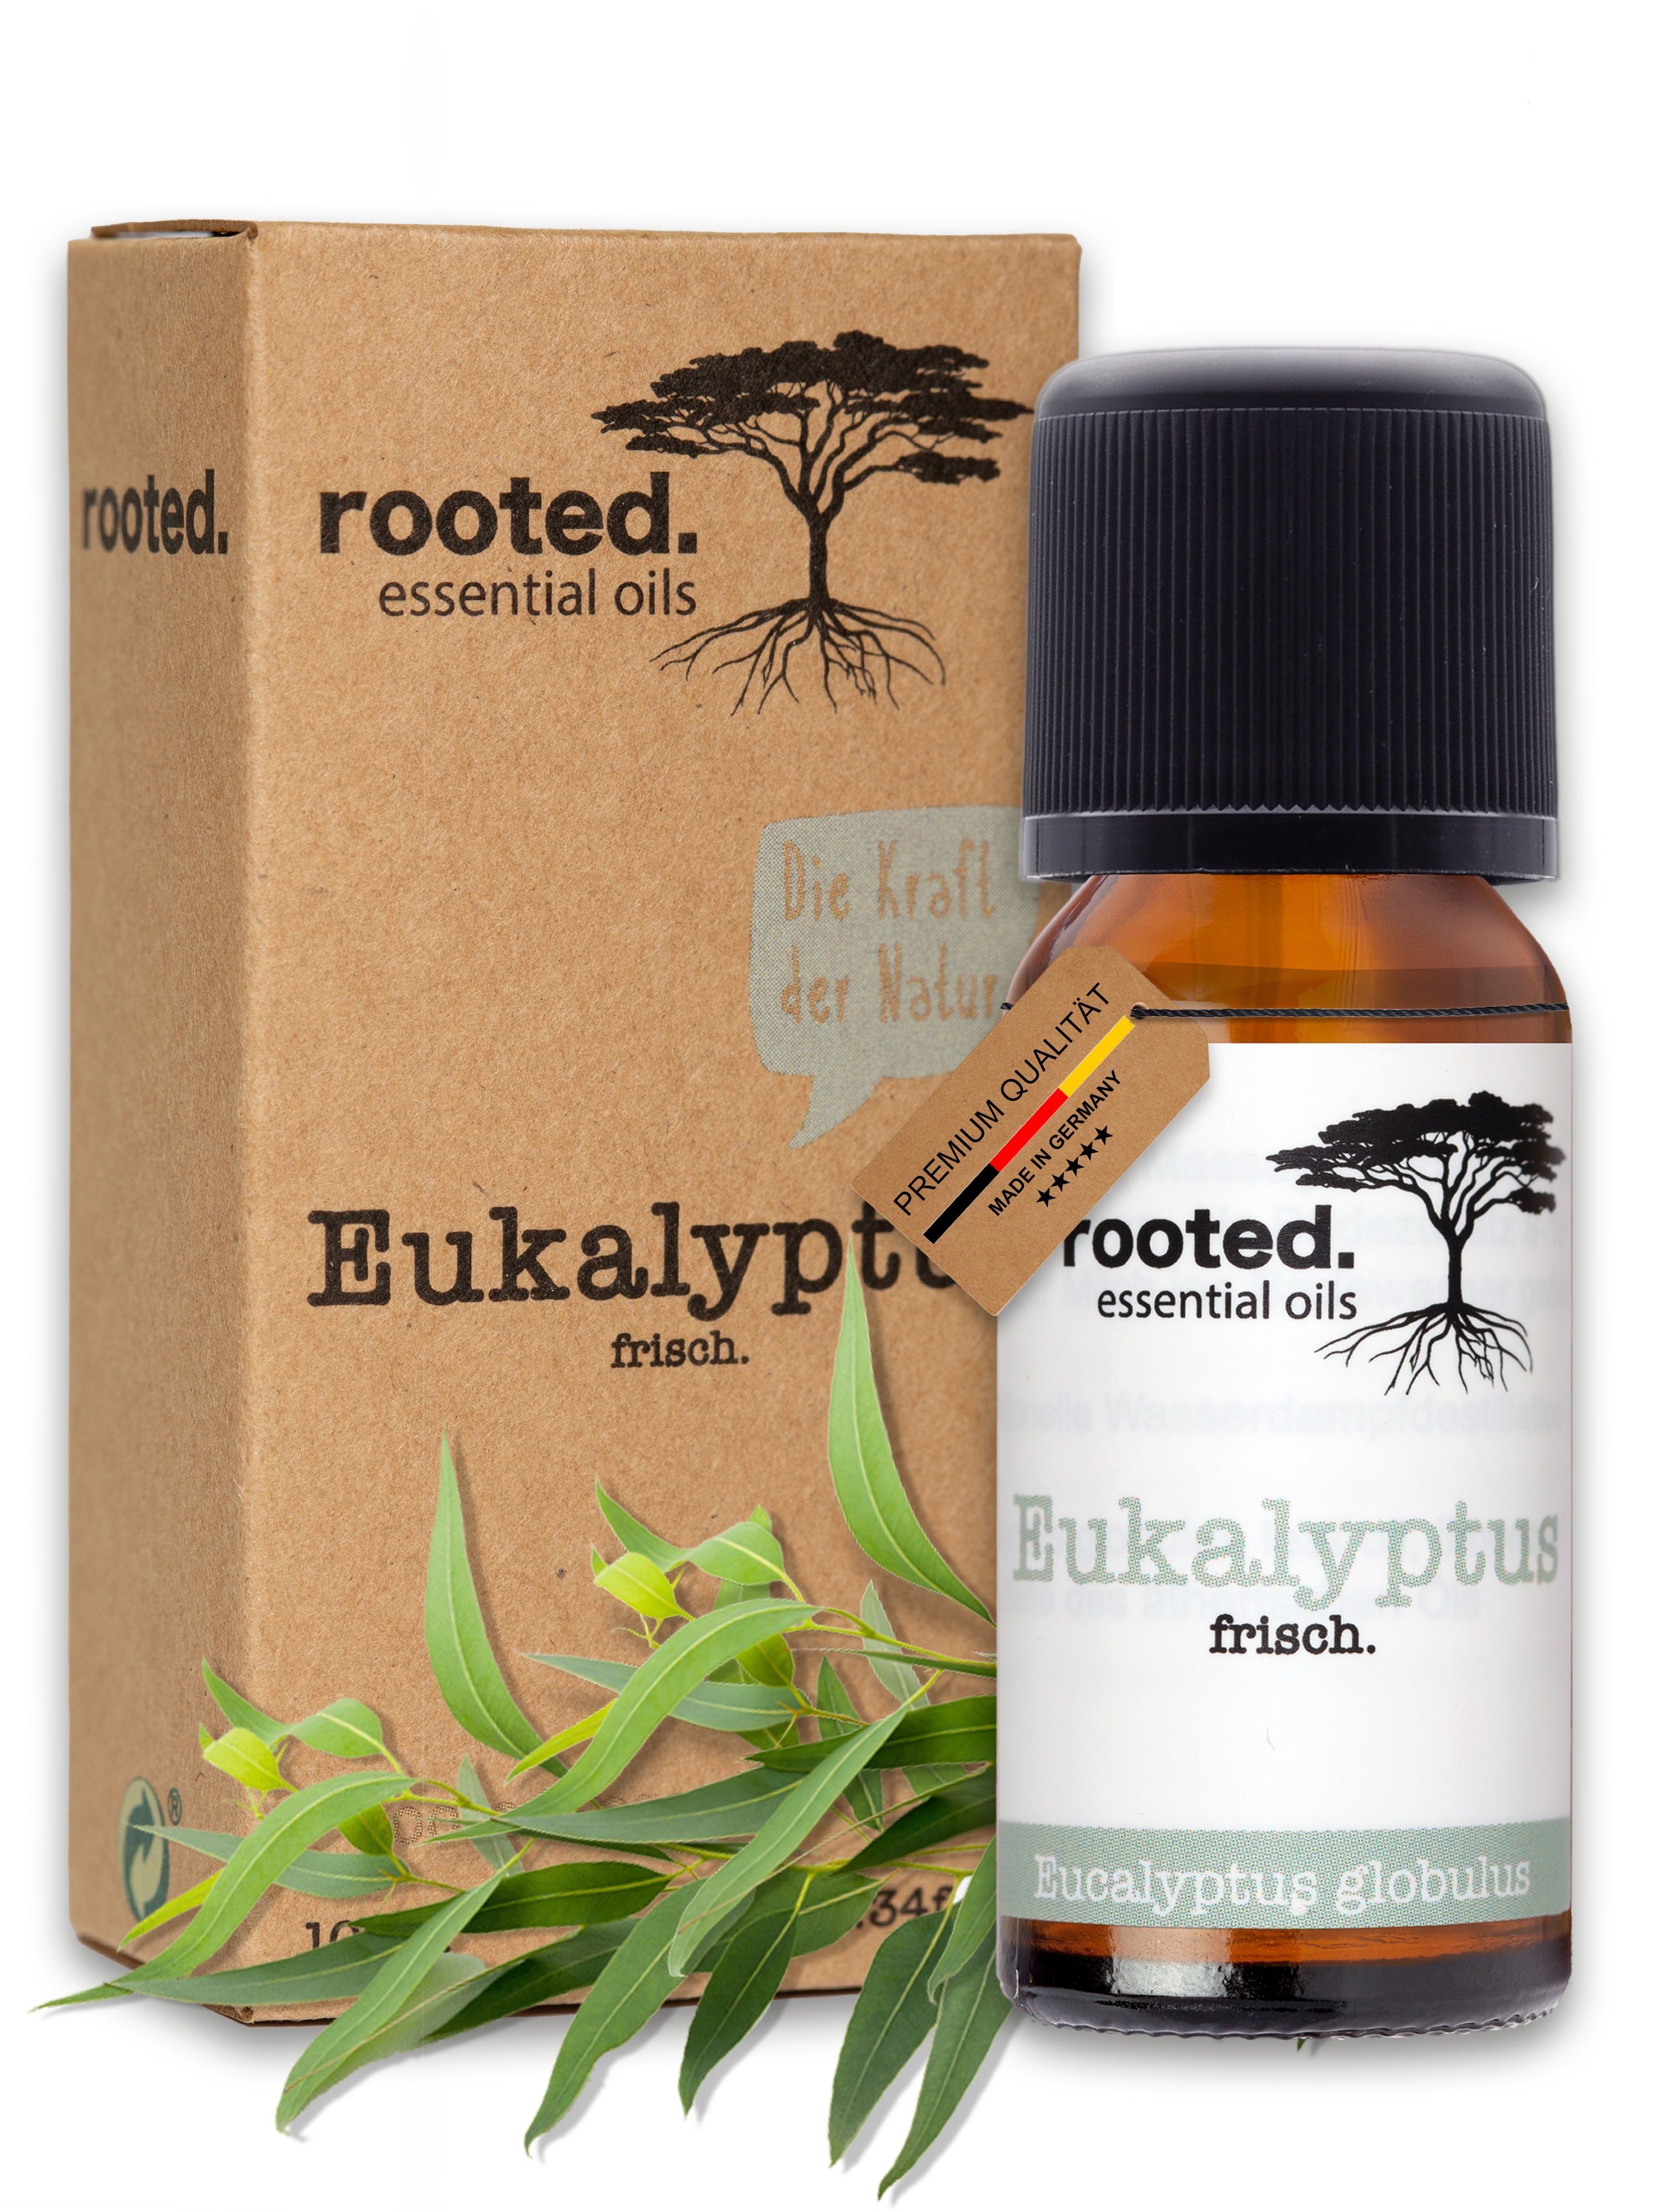 rooted. Körperöl rooted.®, 10ml ätherisches Eukalyptusöl, globulus Eucalyptus